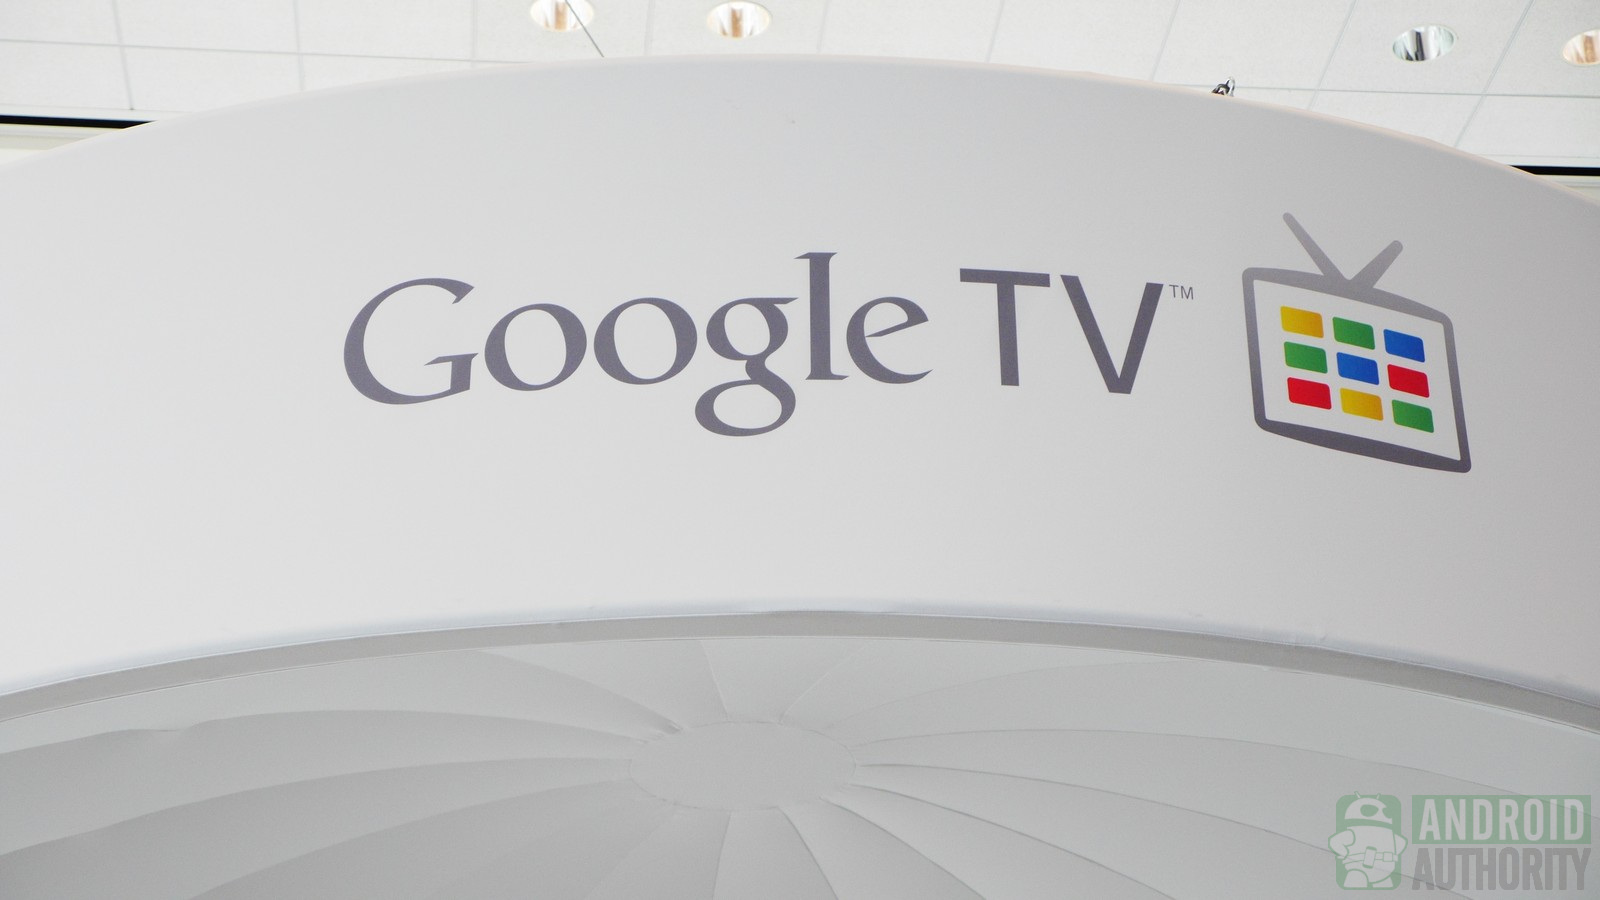 Google-io-2013 Google TV徽标1600 AA